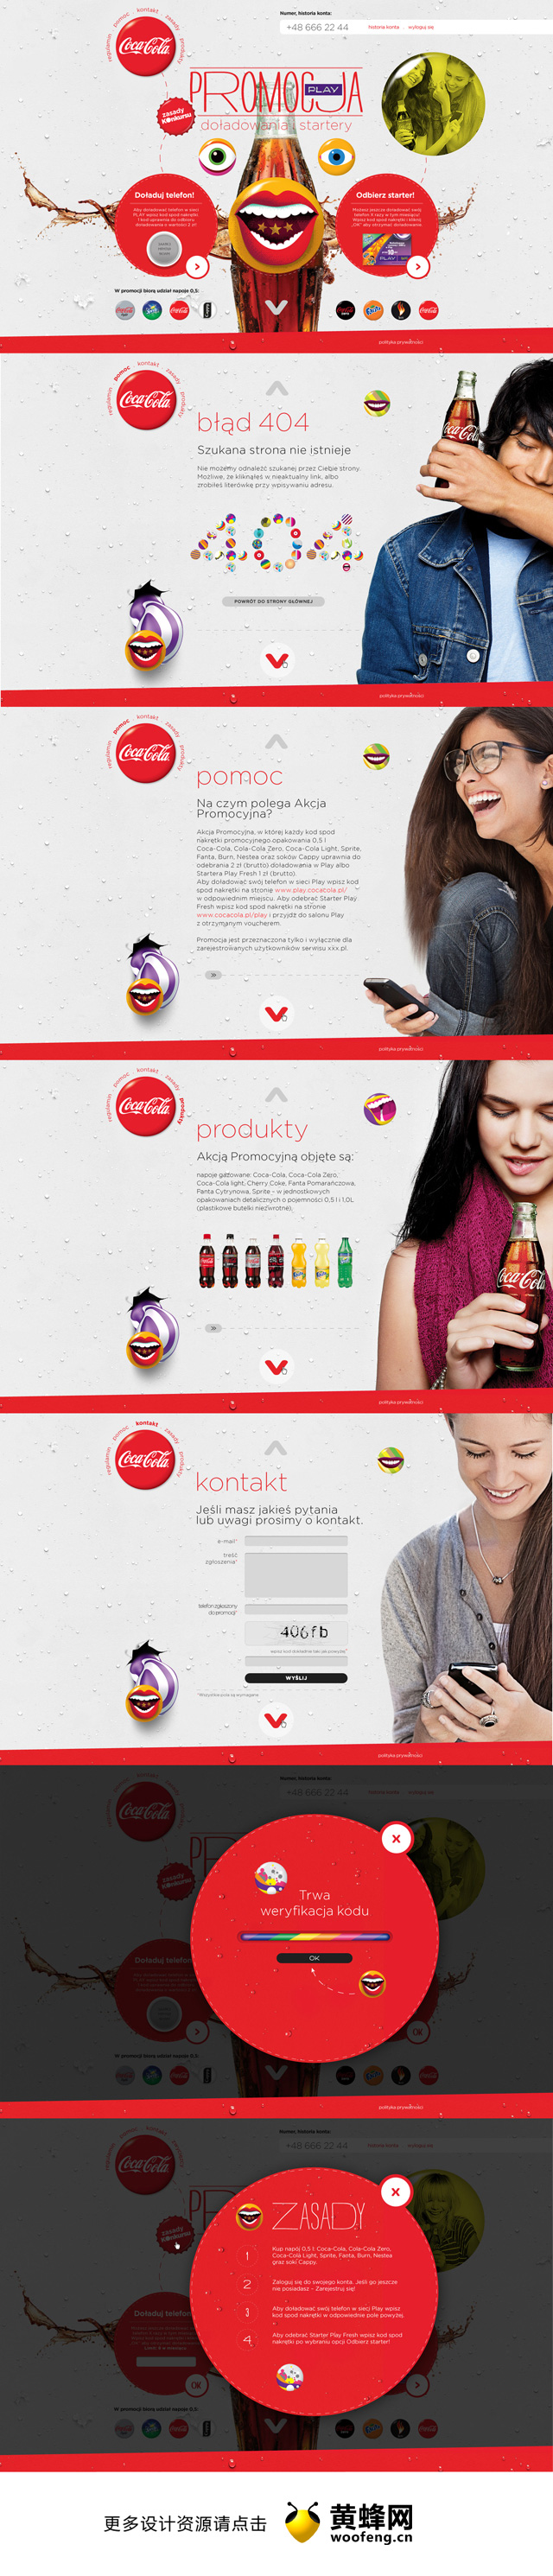 可口可乐顶级宣传与戏剧网页设计欣赏，来源自黄蜂网https://woofeng.cn/webcut/